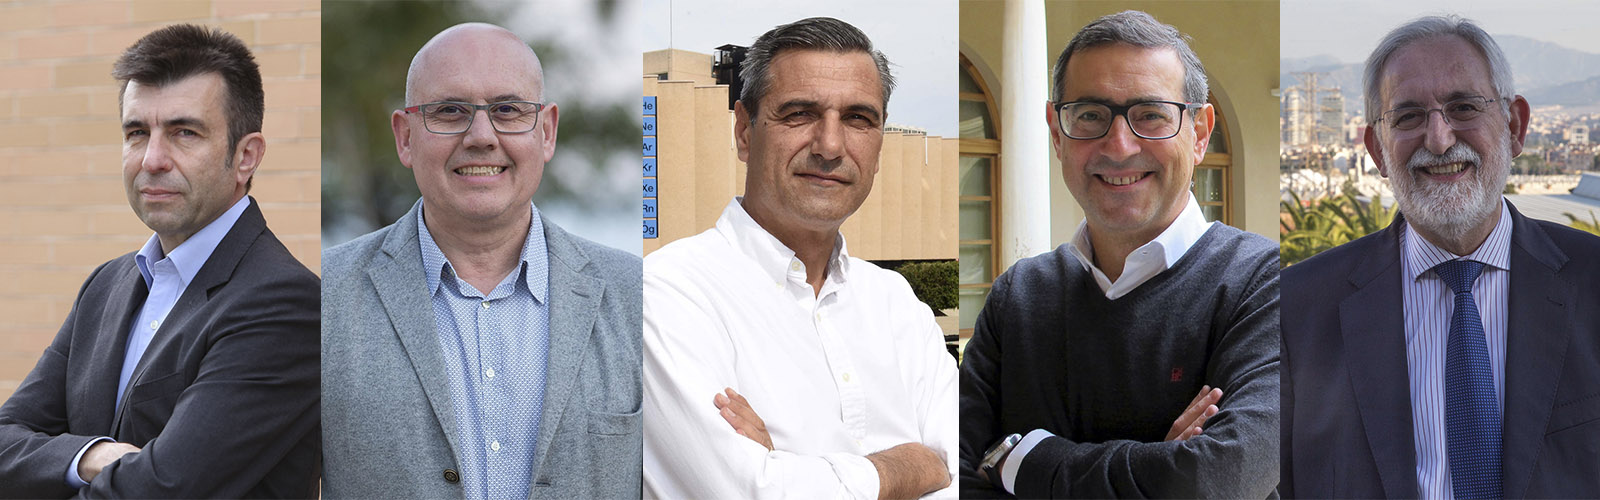 Entrevistas a los candidatos a Rector de la Universidad de Murcia